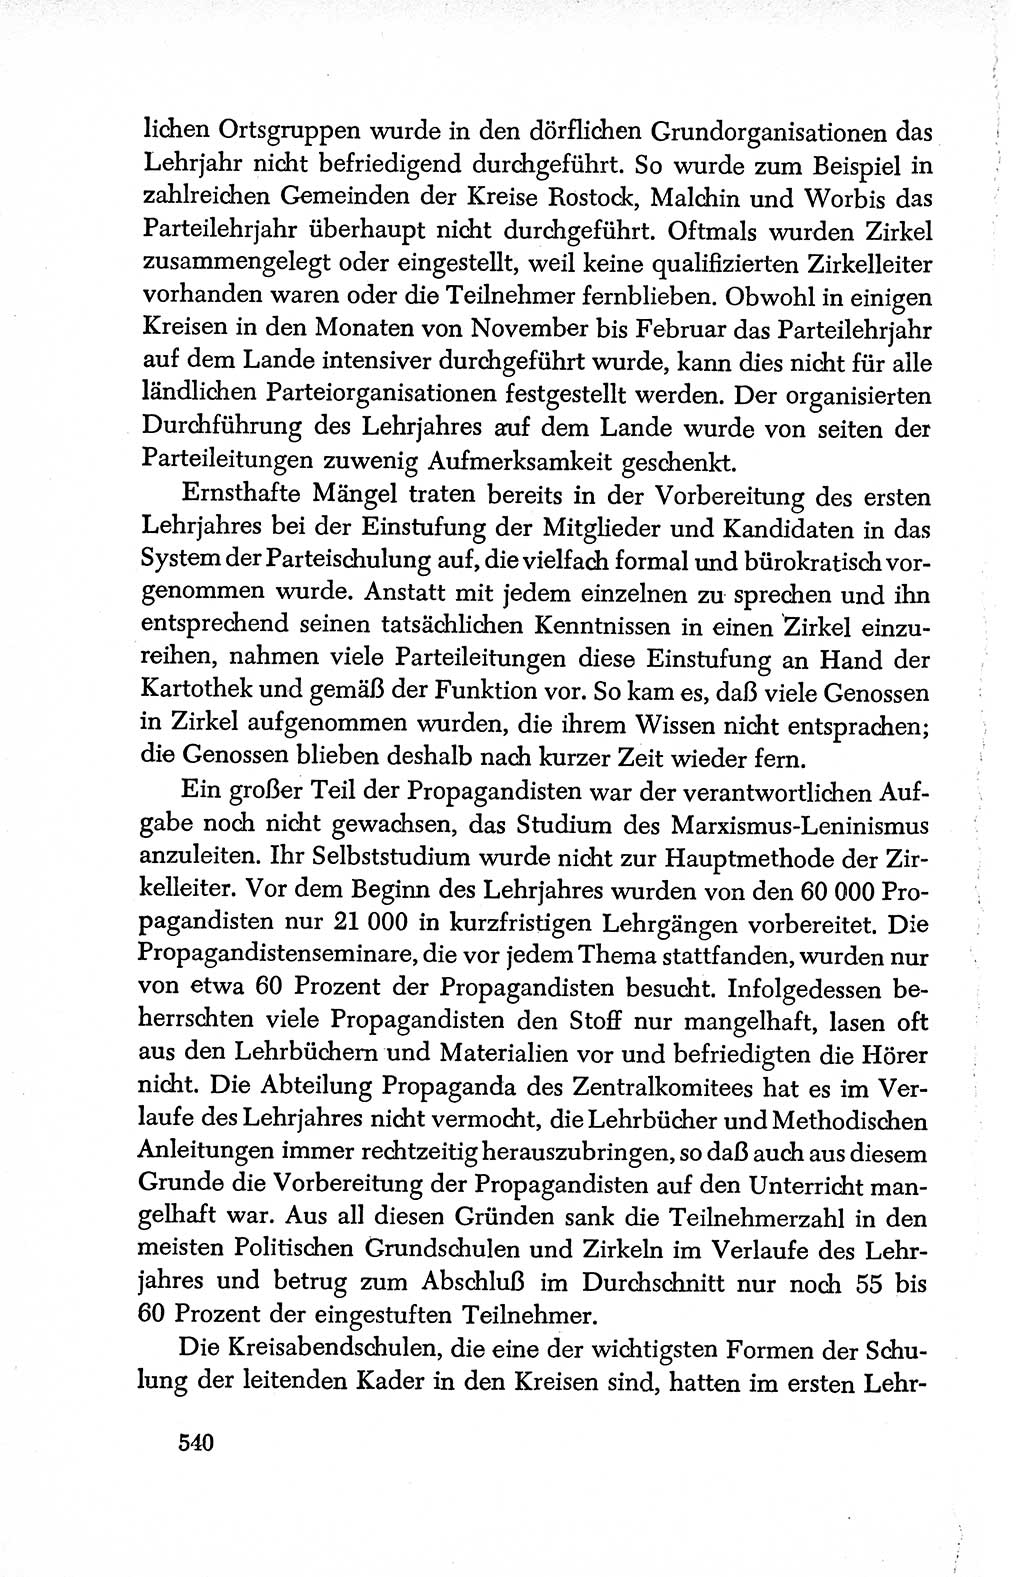 Dokumente der Sozialistischen Einheitspartei Deutschlands (SED) [Deutsche Demokratische Republik (DDR)] 1950-1952, Seite 540 (Dok. SED DDR 1950-1952, S. 540)